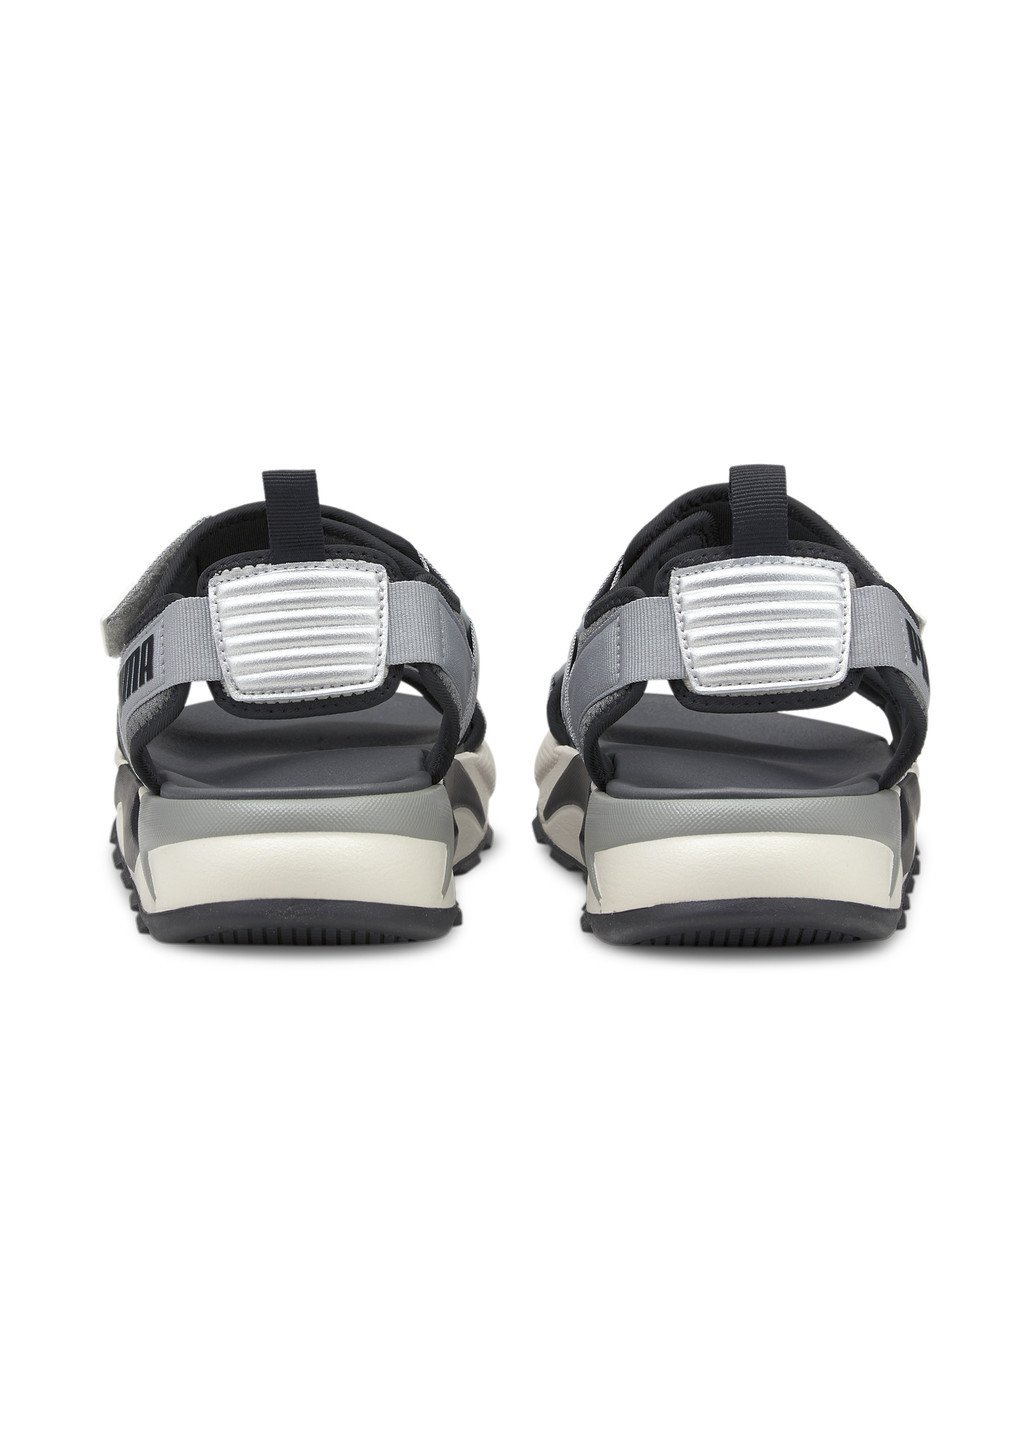 Сандалии RS Sandals Puma однотонные комбинированные спортивные